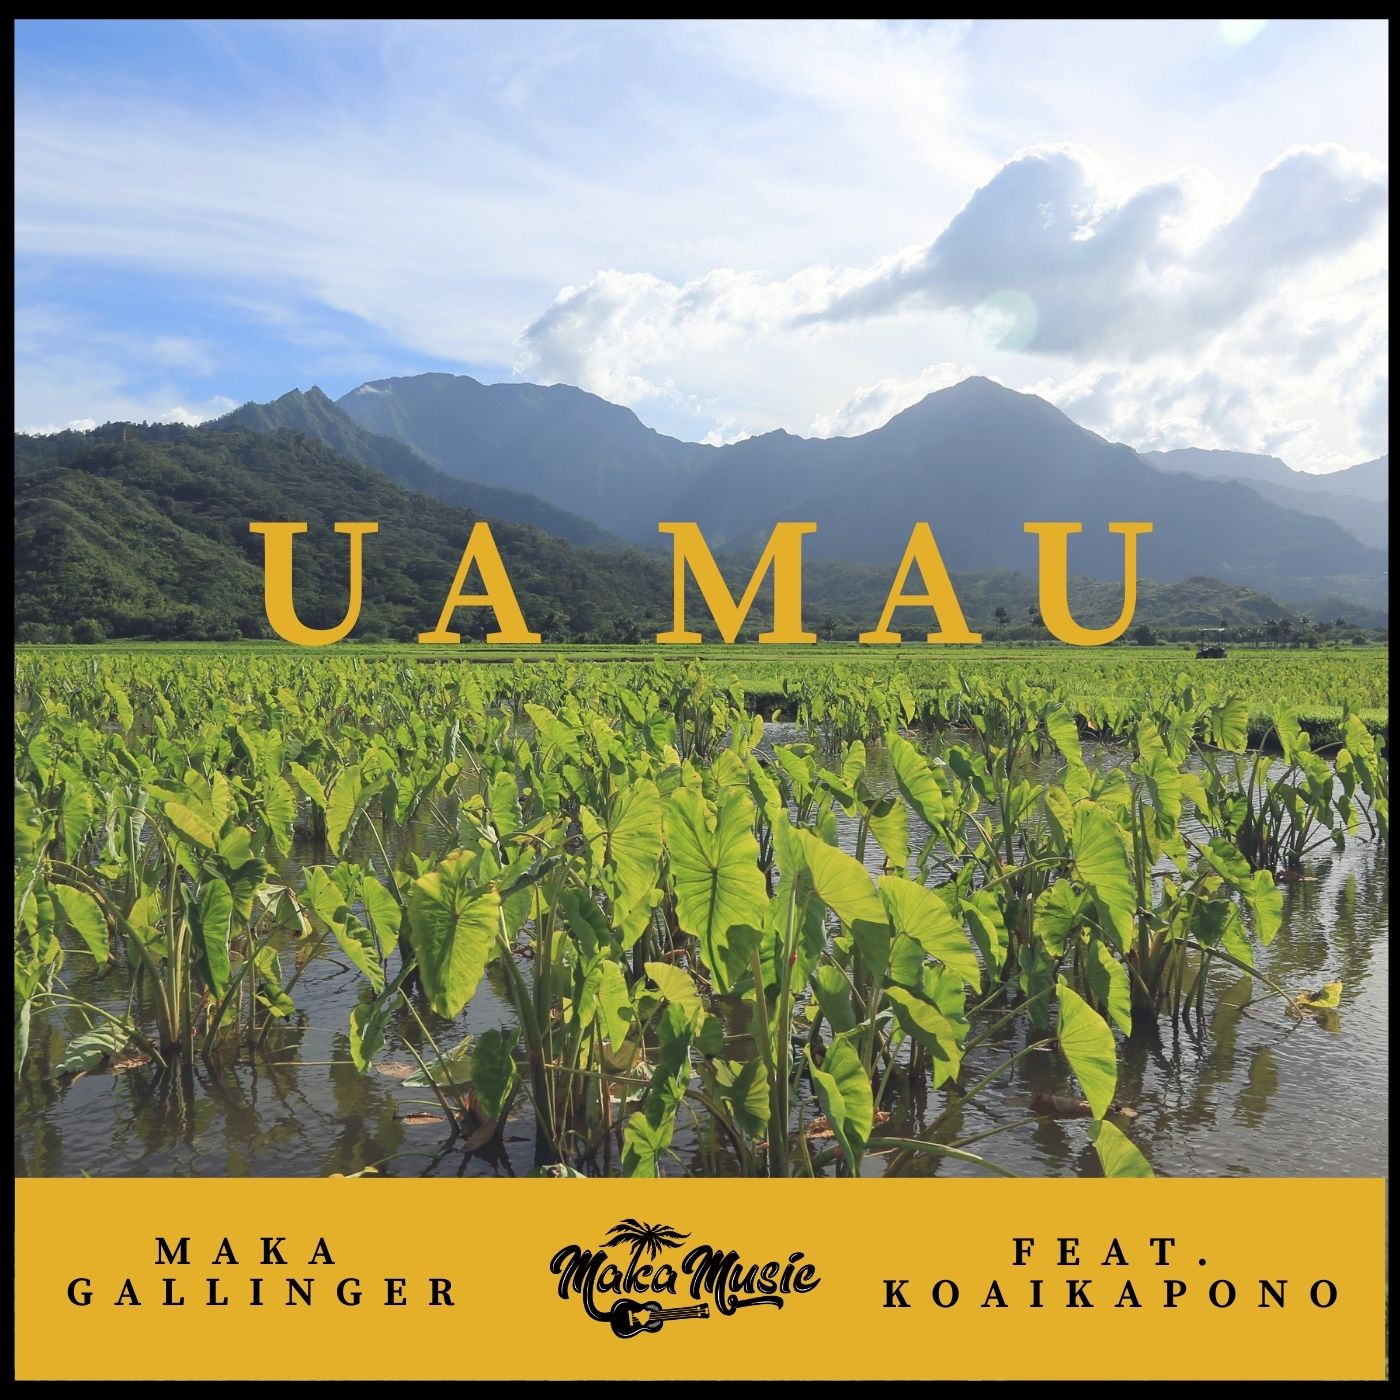 Art for Ua Mau Feat. Koaikapono by Maka Gallinger